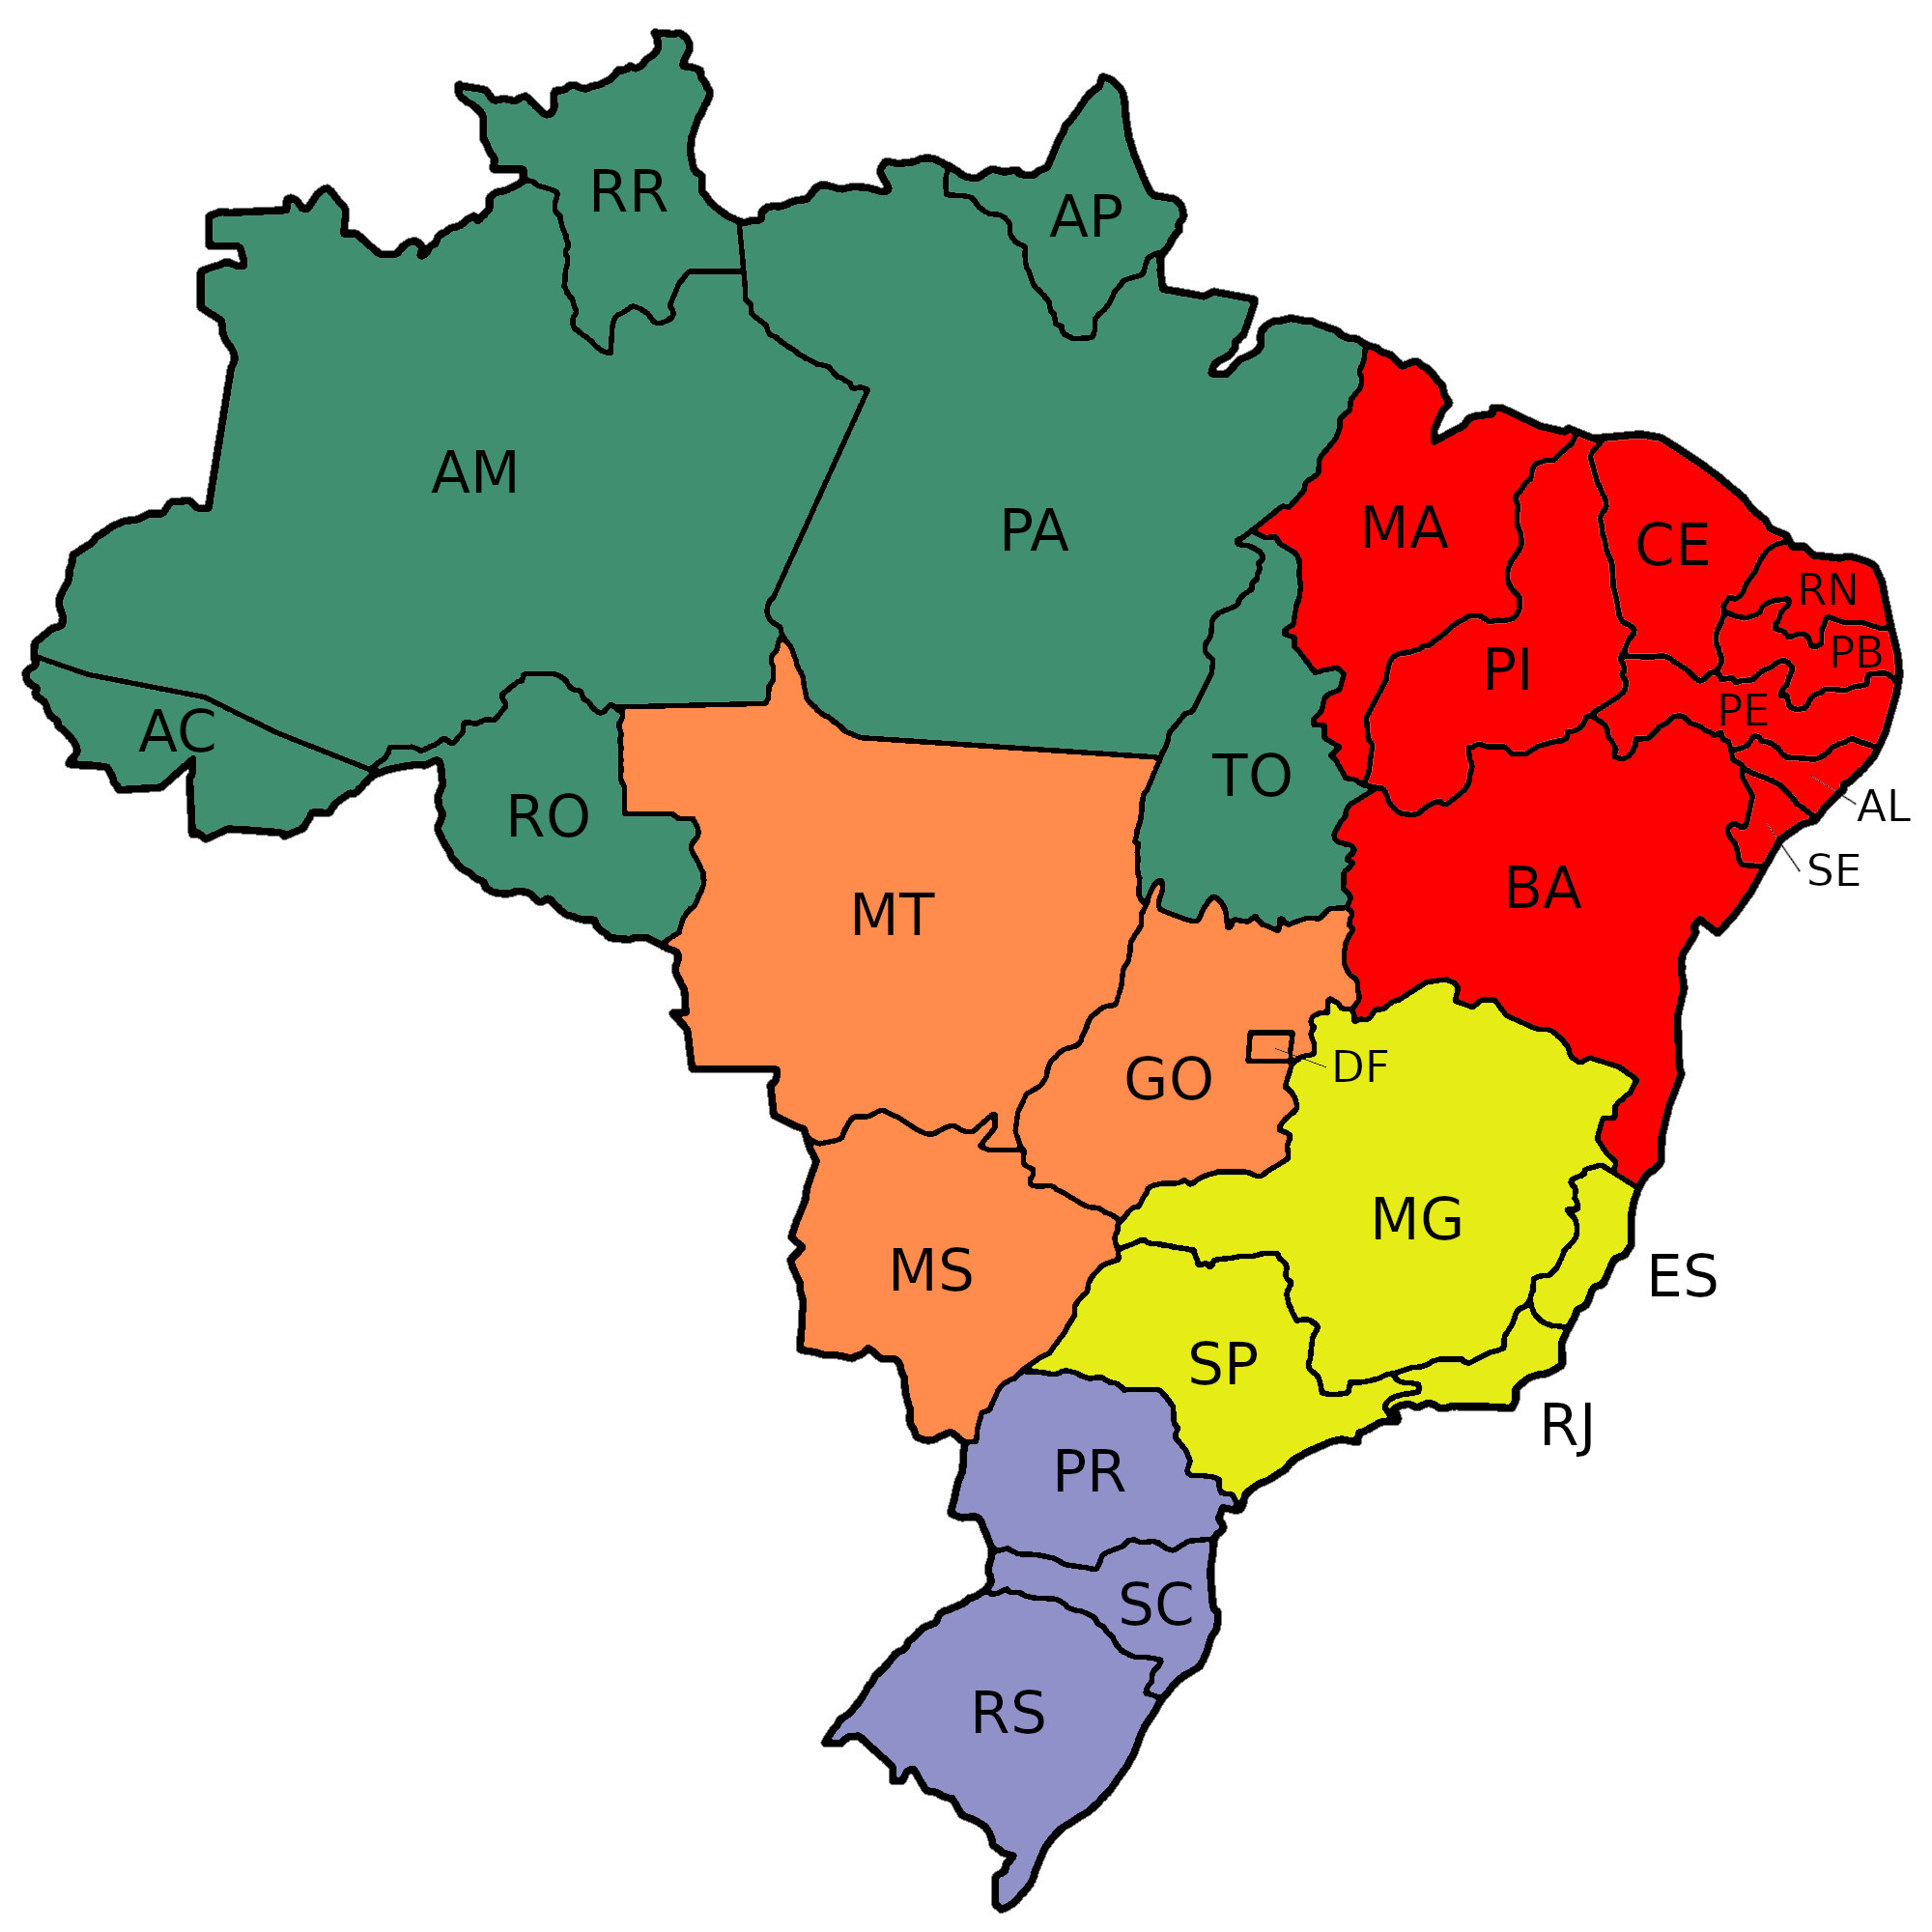 Mapa do Brasil - por estados e regiões, em branco e colorido